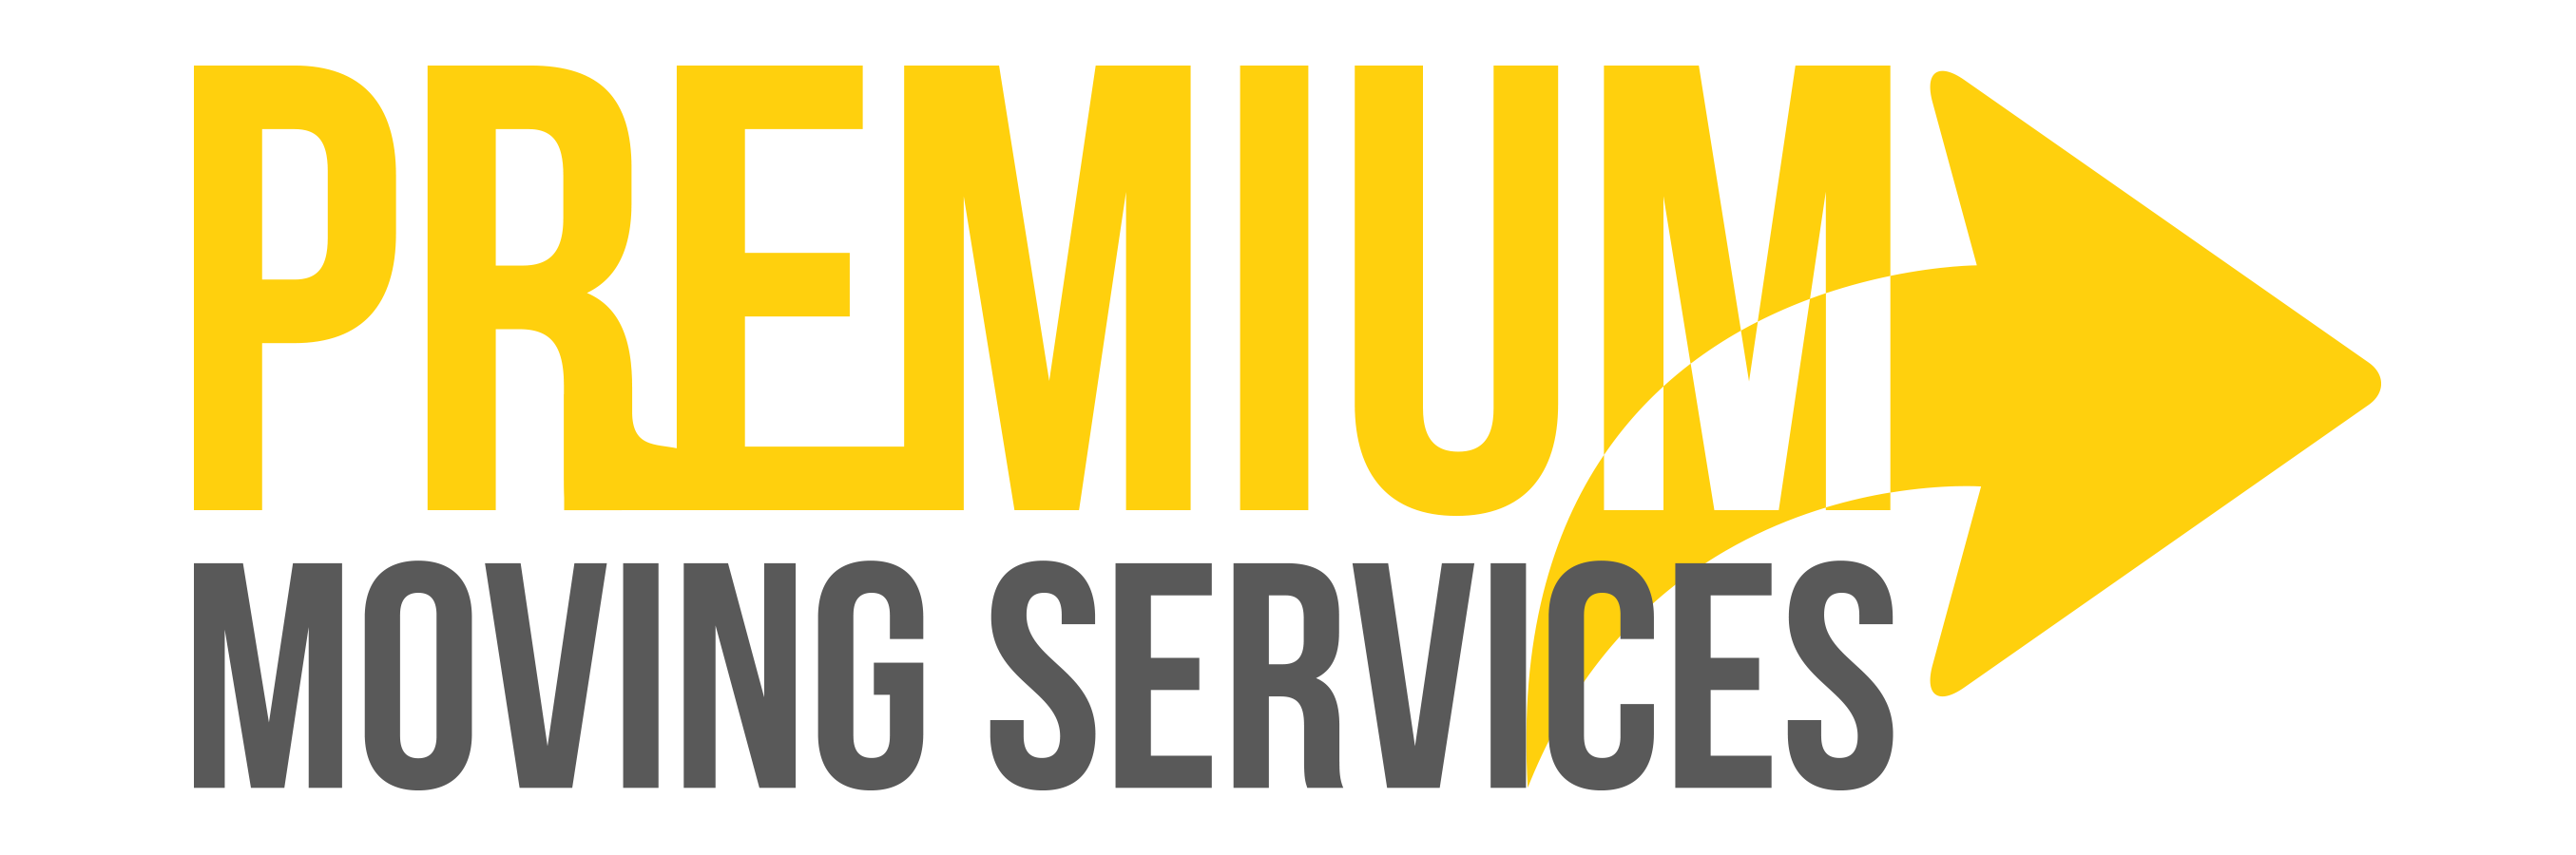 Premium Moving Services, LLC Logo